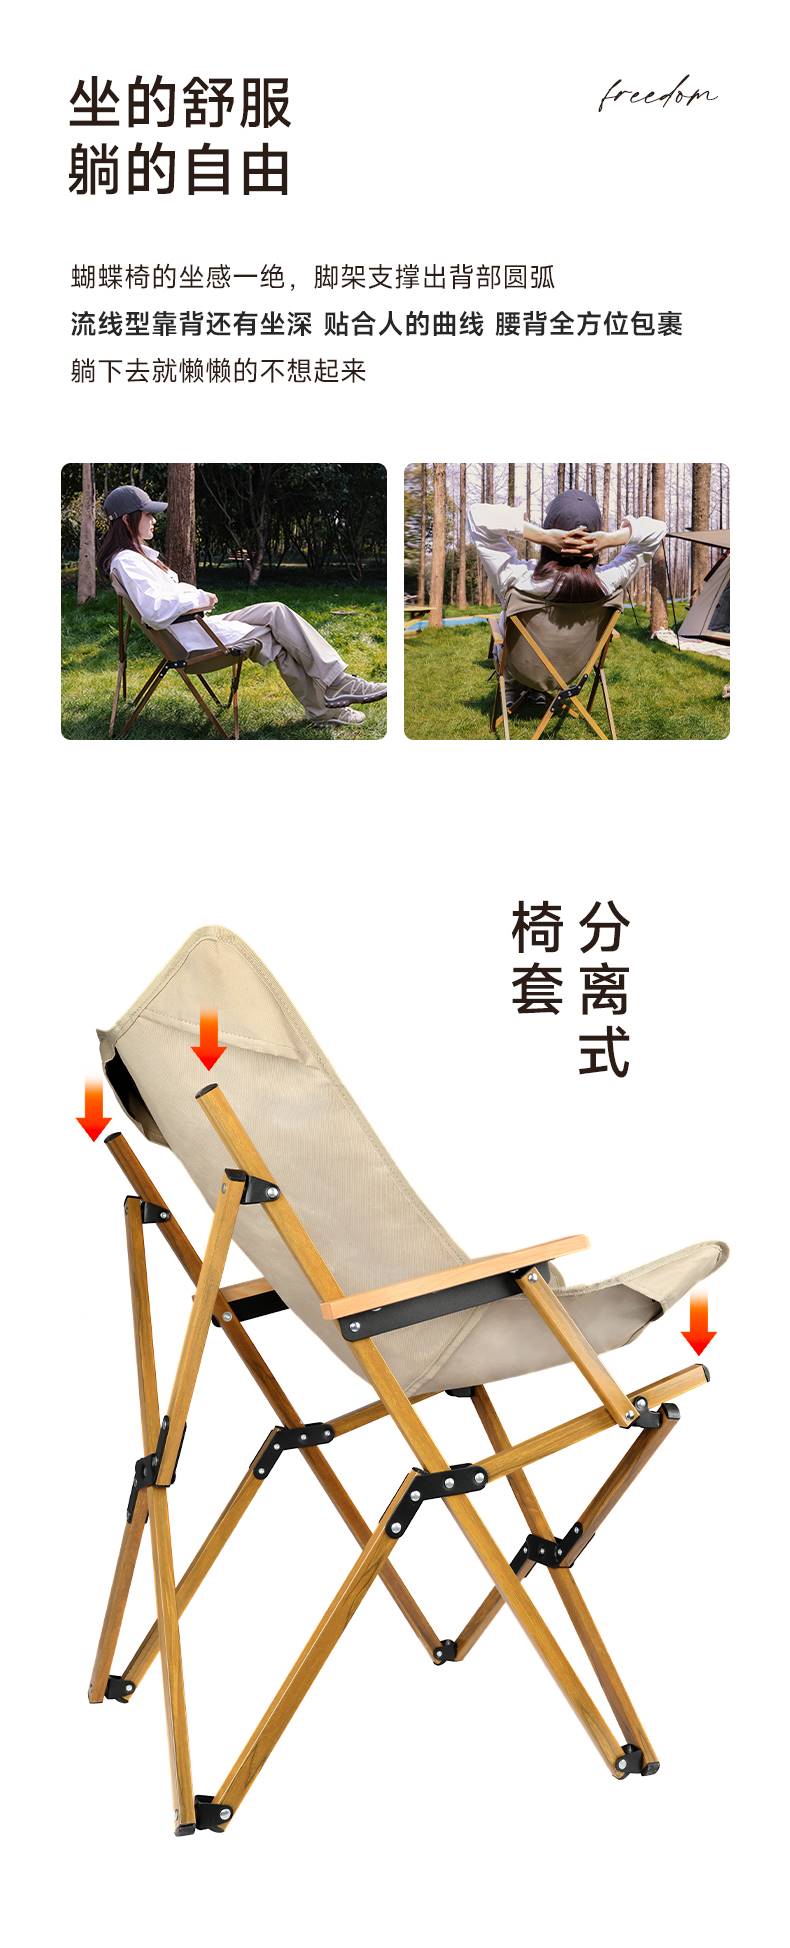 嘉仕宁户外折叠椅子便携式新型蝴蝶椅露营躺椅野外野营钓鱼椅家用